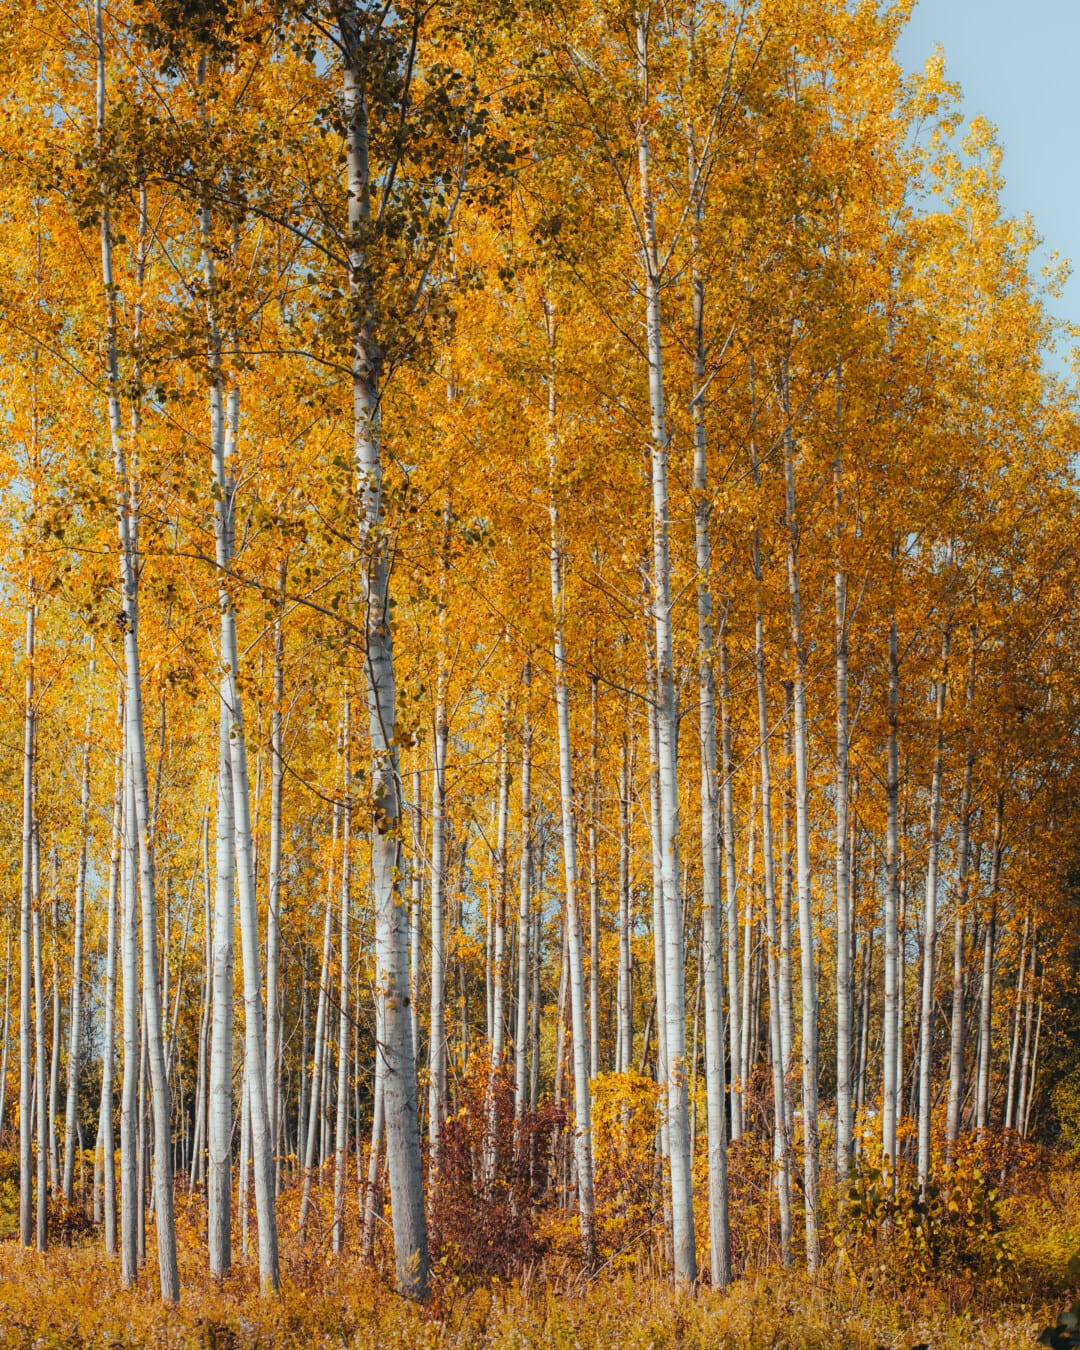 Poplar, floresta, folhas amarelas, marrom amarelado, estação Outono, Outubro, outono, folha, natureza, madeira